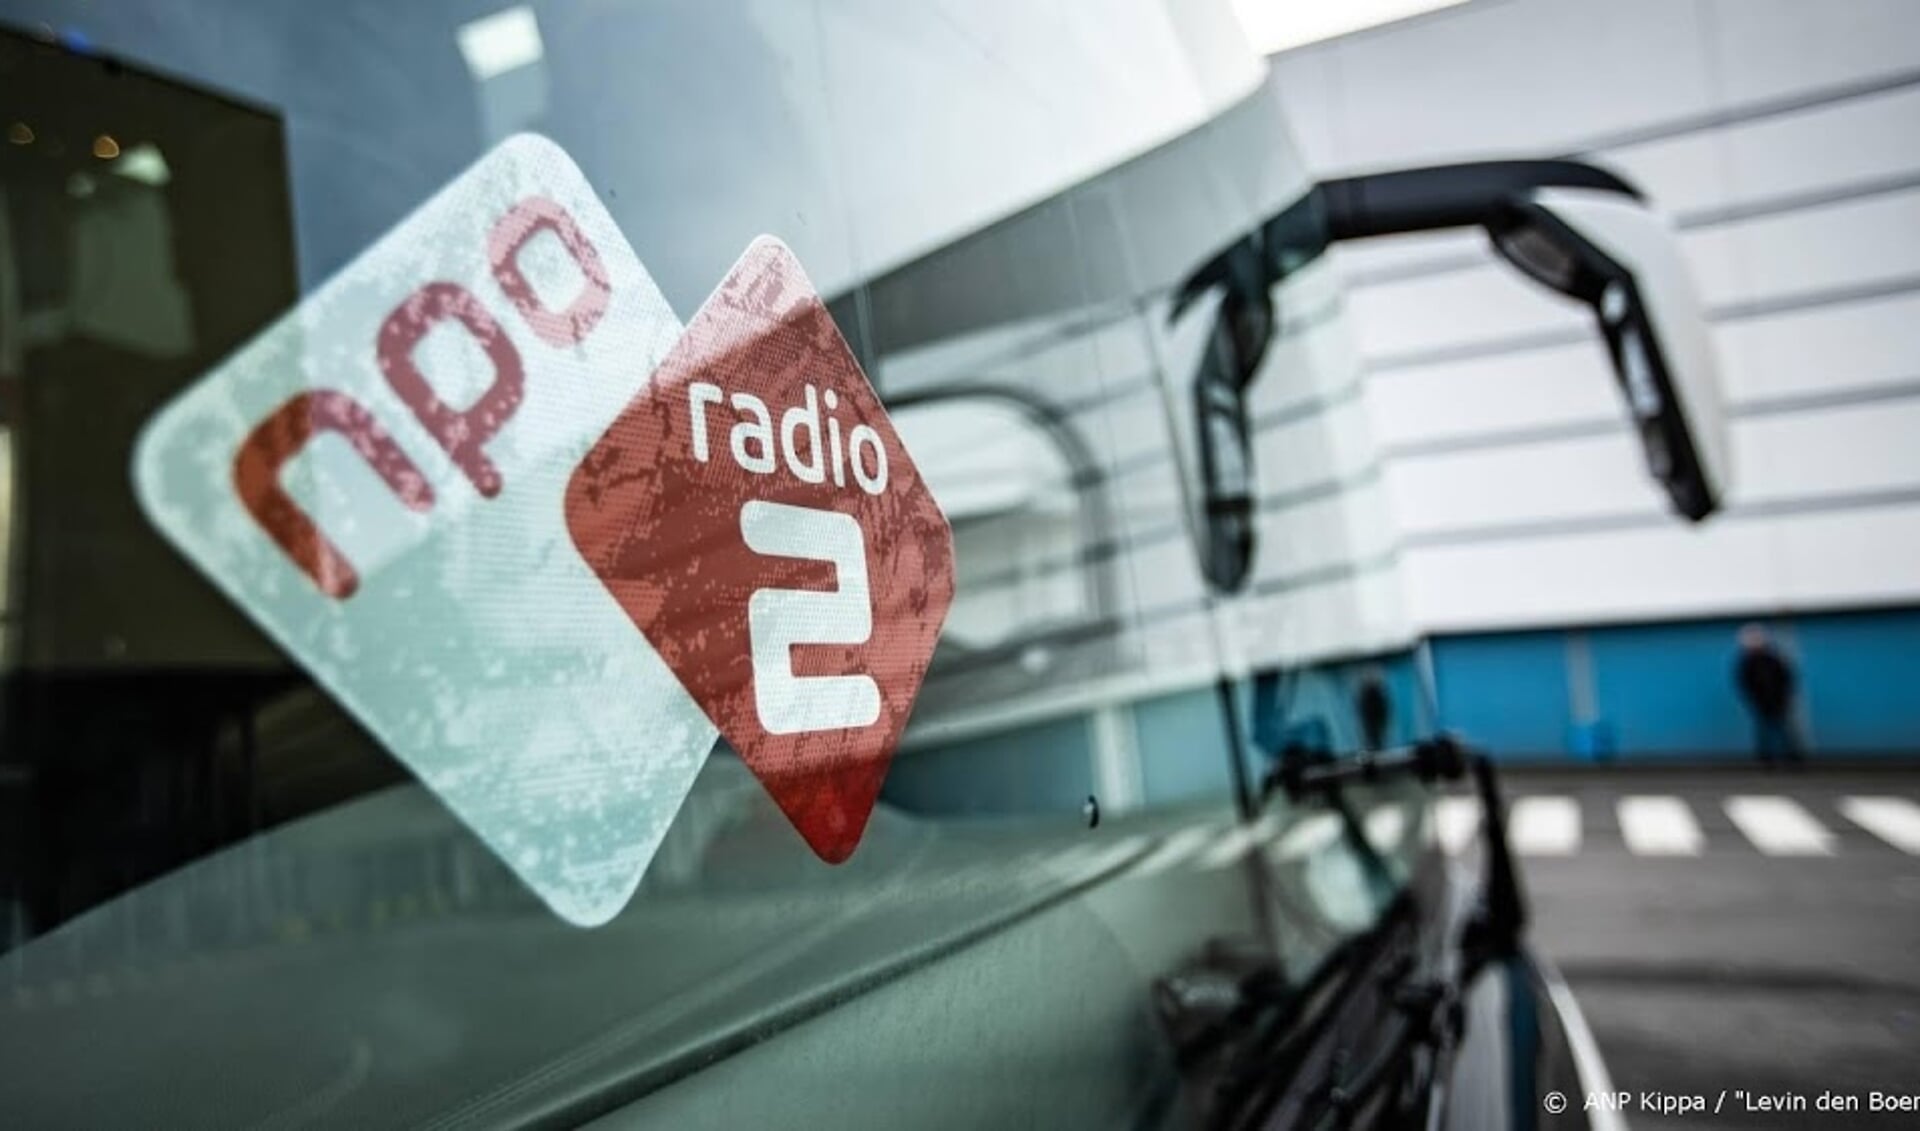 2018-12-01 12:52:25 UTRECHT - NPO Radio 2 dj's Wouter van der Goes en Frank van 't Hof tijdens de opening van de Top 2000 Stembus. In de bus kunnen luisteraars stemmen op hun favoriete lied. ANP KIPPA LEVIN DEN BOER